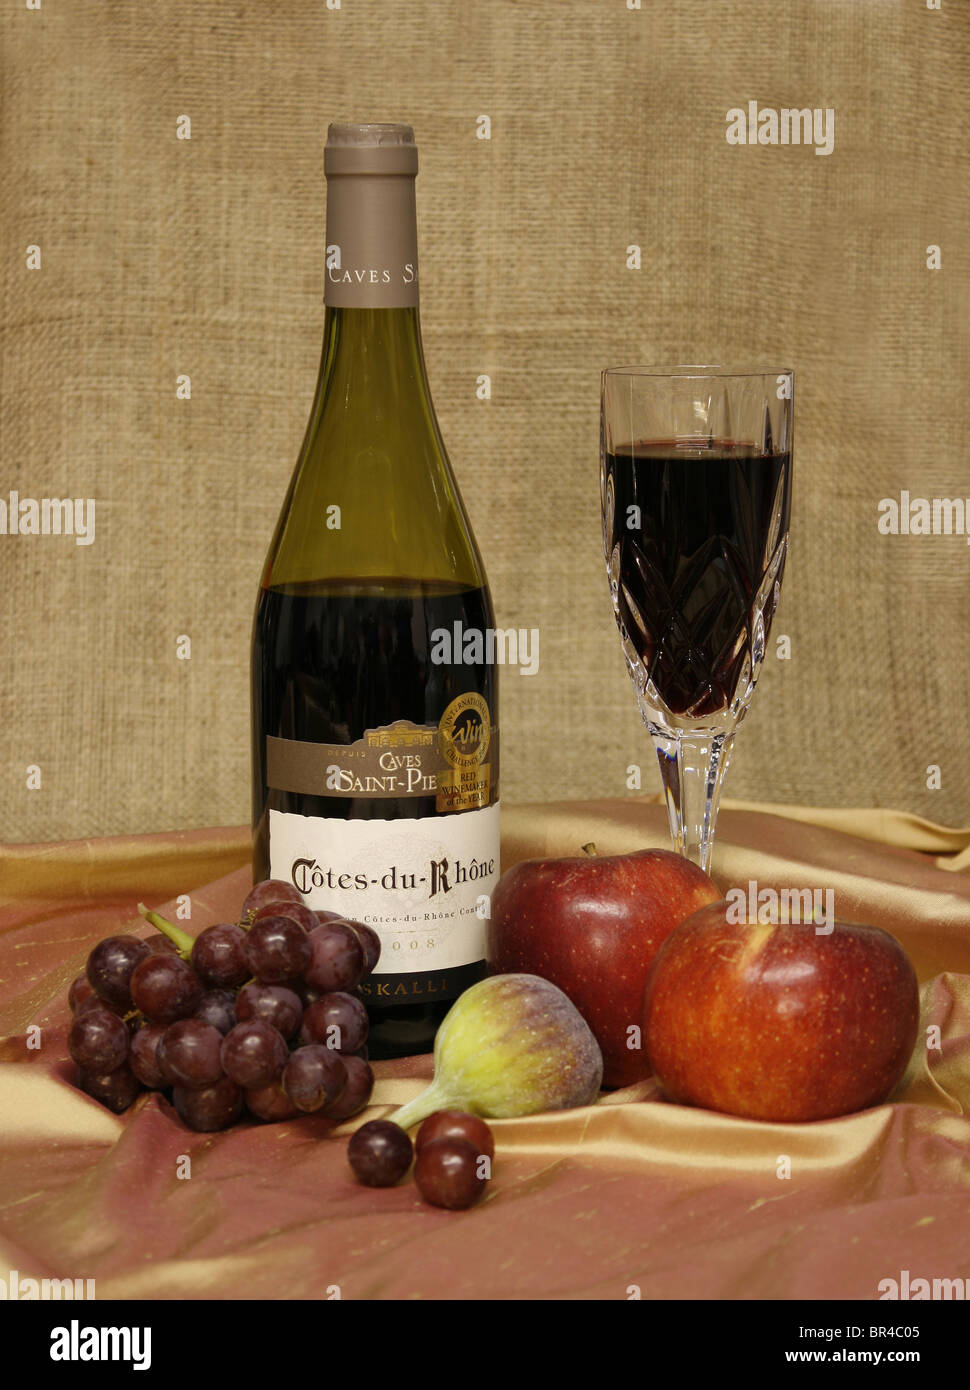 Bouteille de vin rouge et de vin dans un verre, avec des fruits sur un fond de toile. Banque D'Images